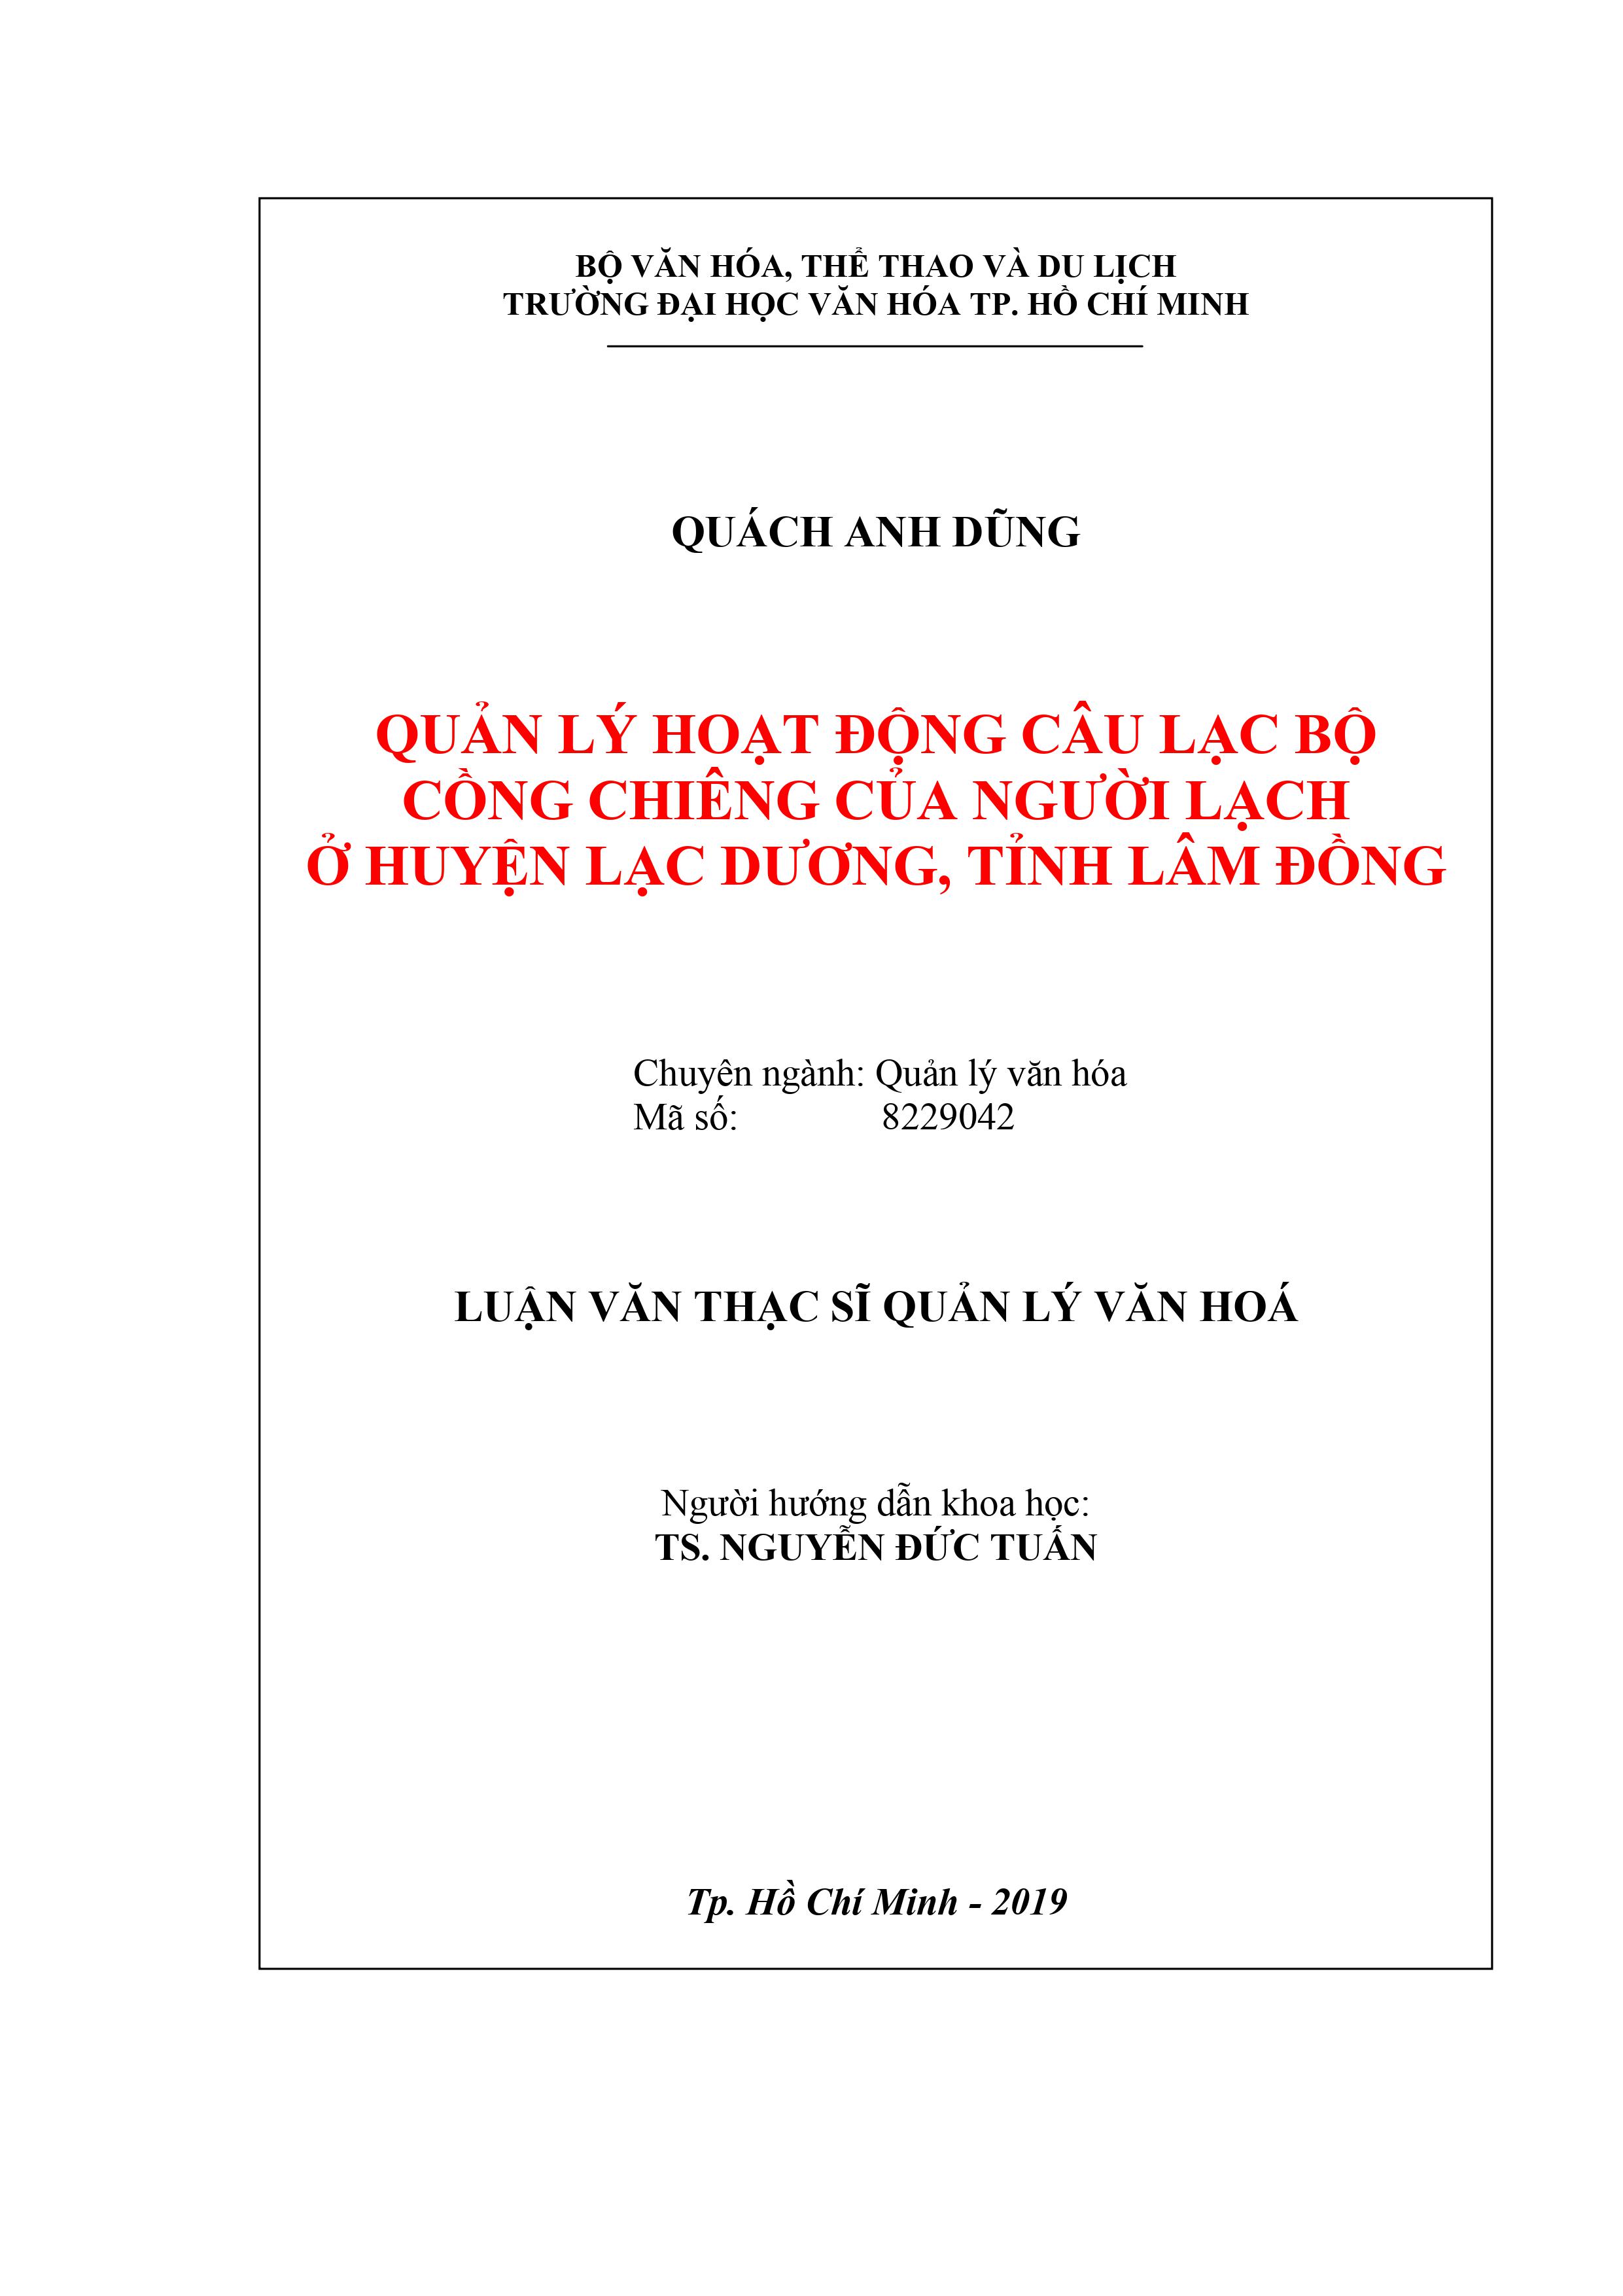 Quản lý hoạt động câu lạc bộ Cồng chiêng của người Lạch ở huyện Lạc Dương, tỉnh Lâm Đồng